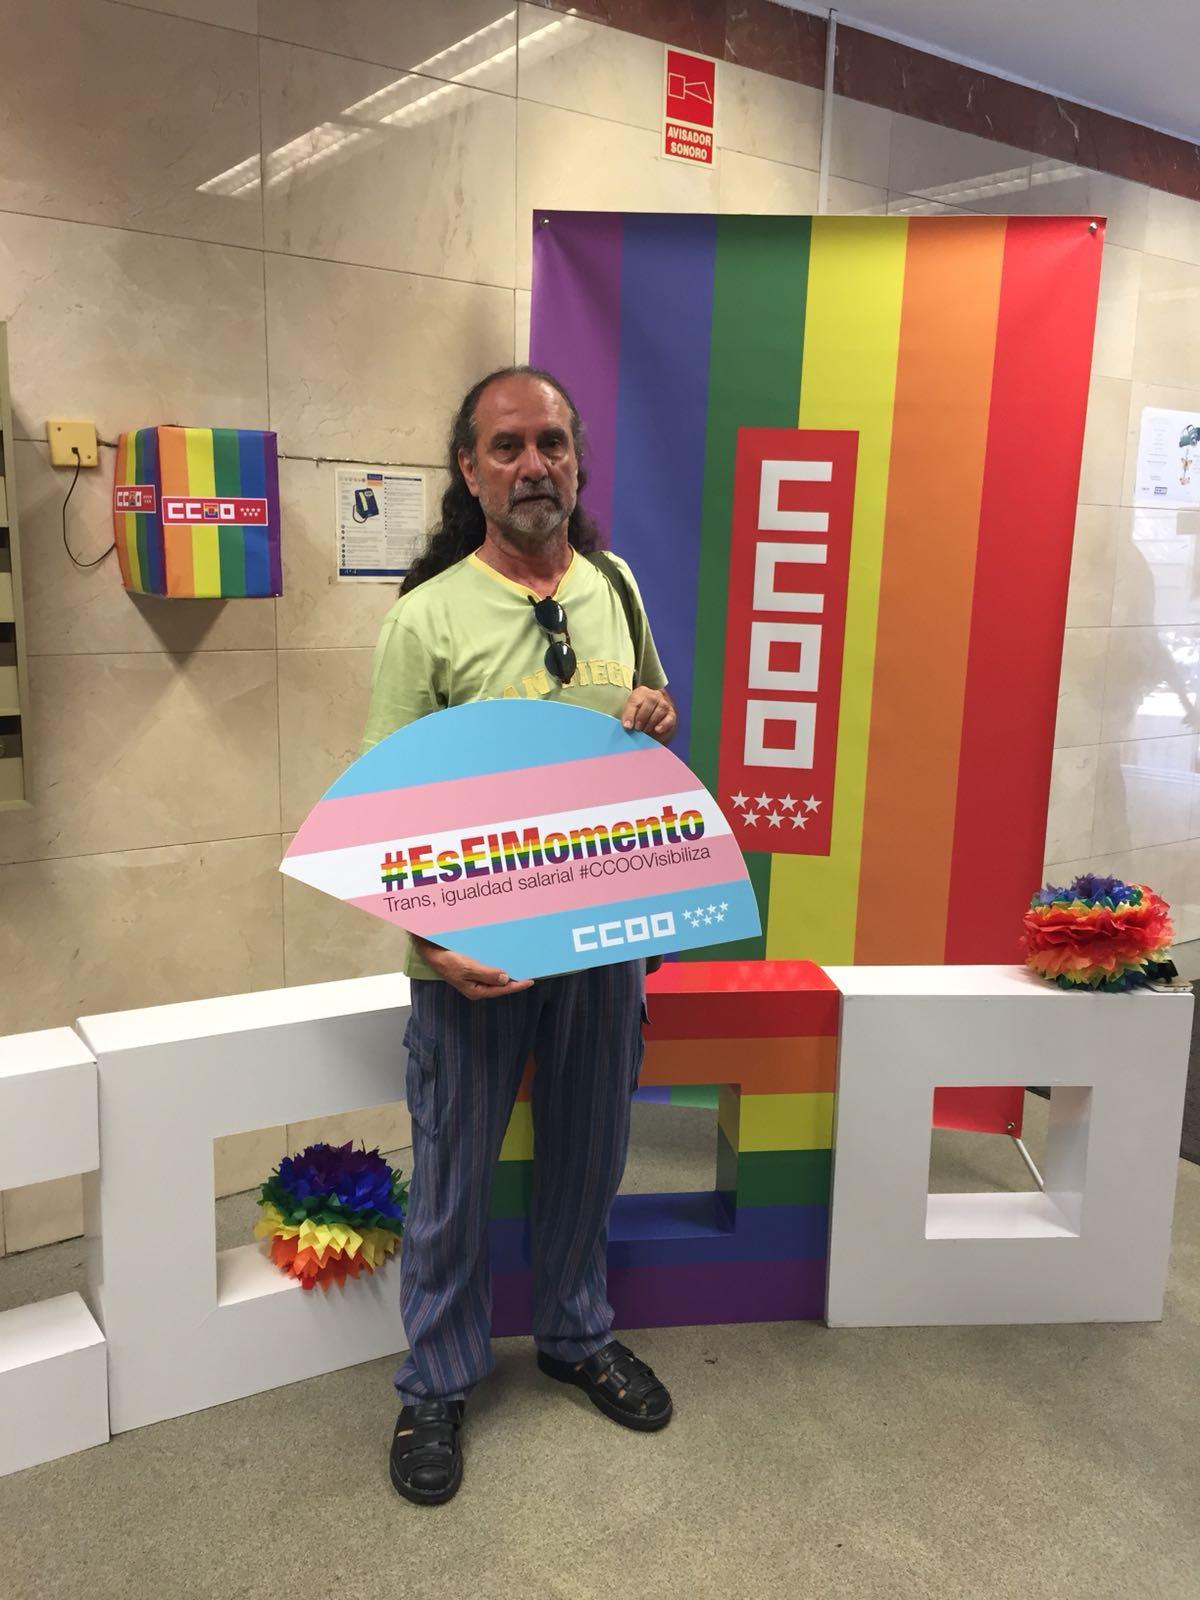 Da Internacional del Orgullo LGBTI #EsElMomento